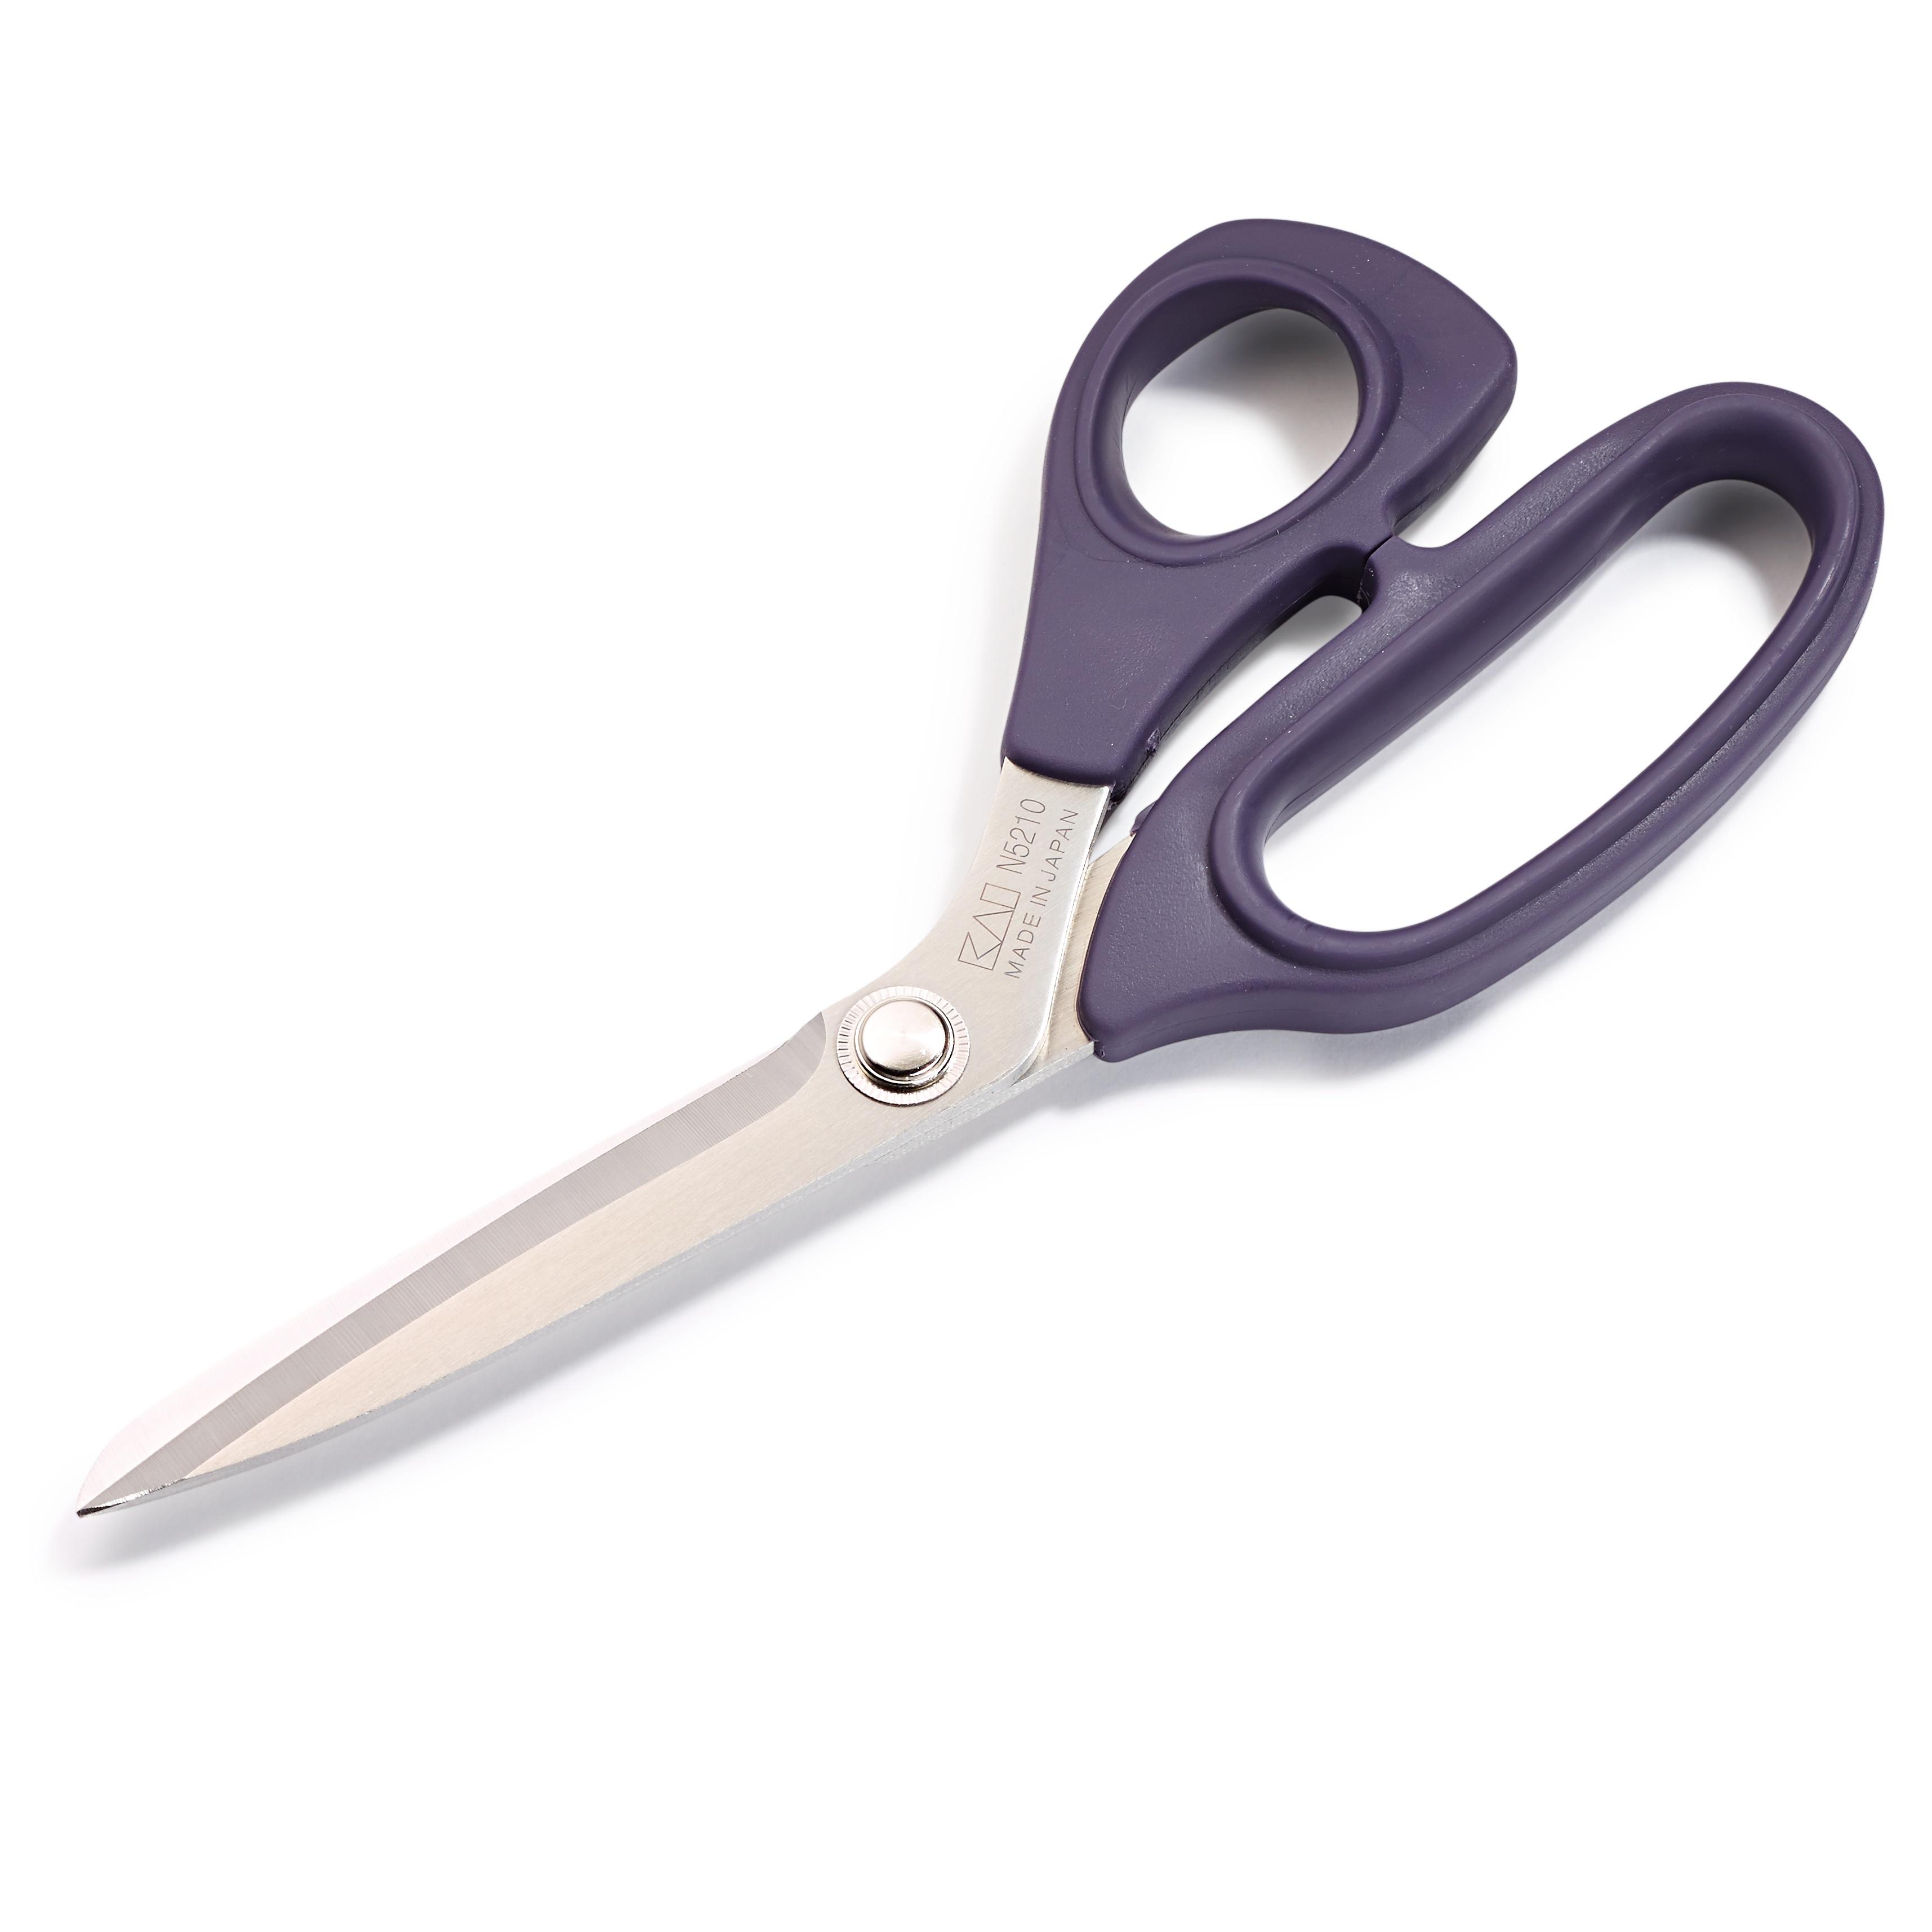 Prym scissors